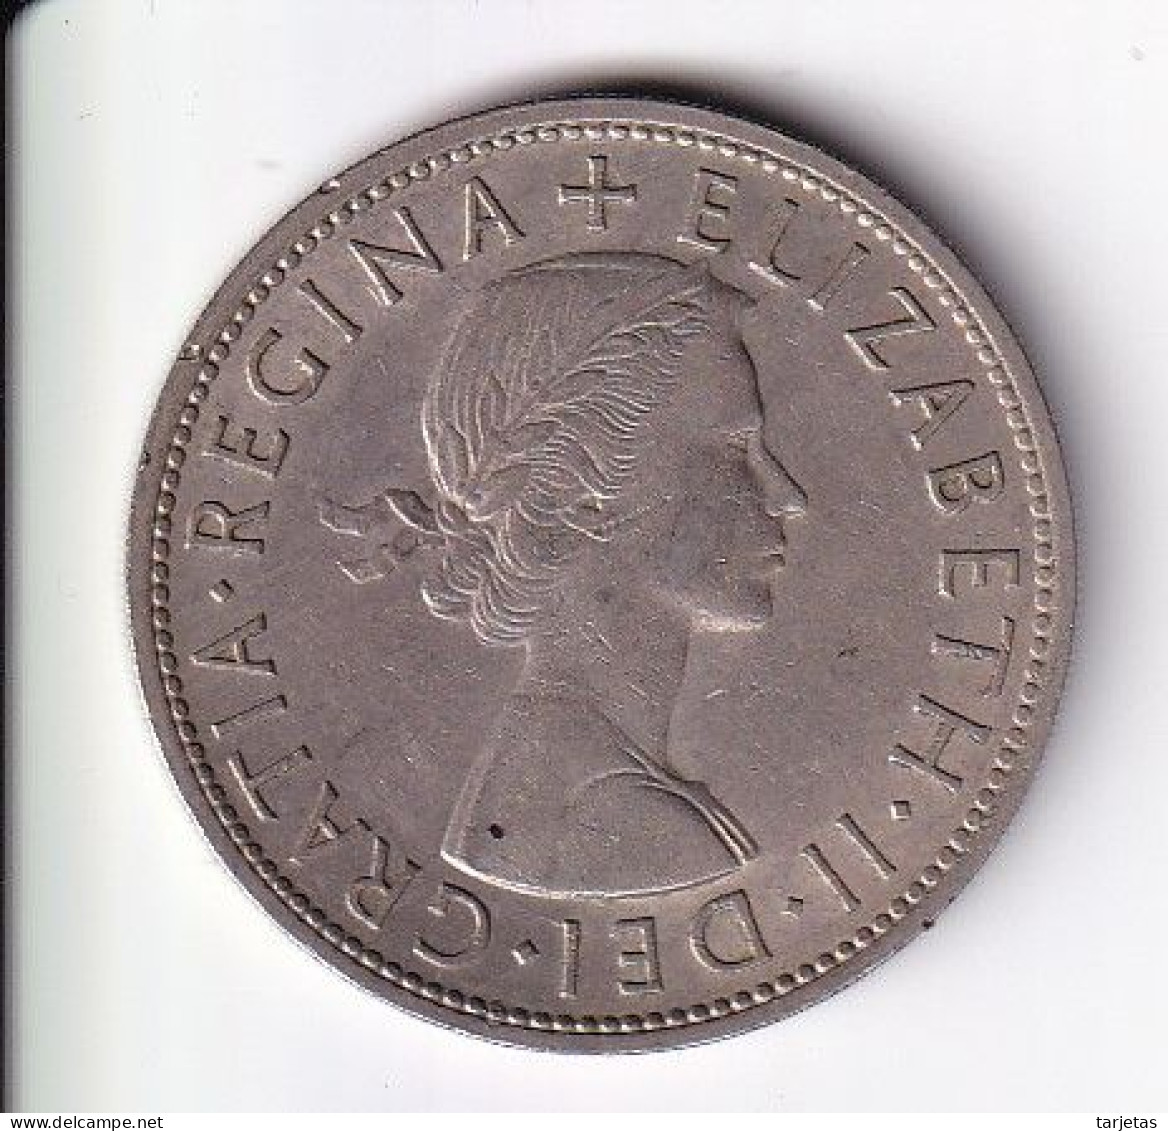 MONEDA DE GRAN BRETAÑA DE 1/2 CROWN DEL AÑO 1961  (COIN) ELIZABETH II - K. 1/2 Crown